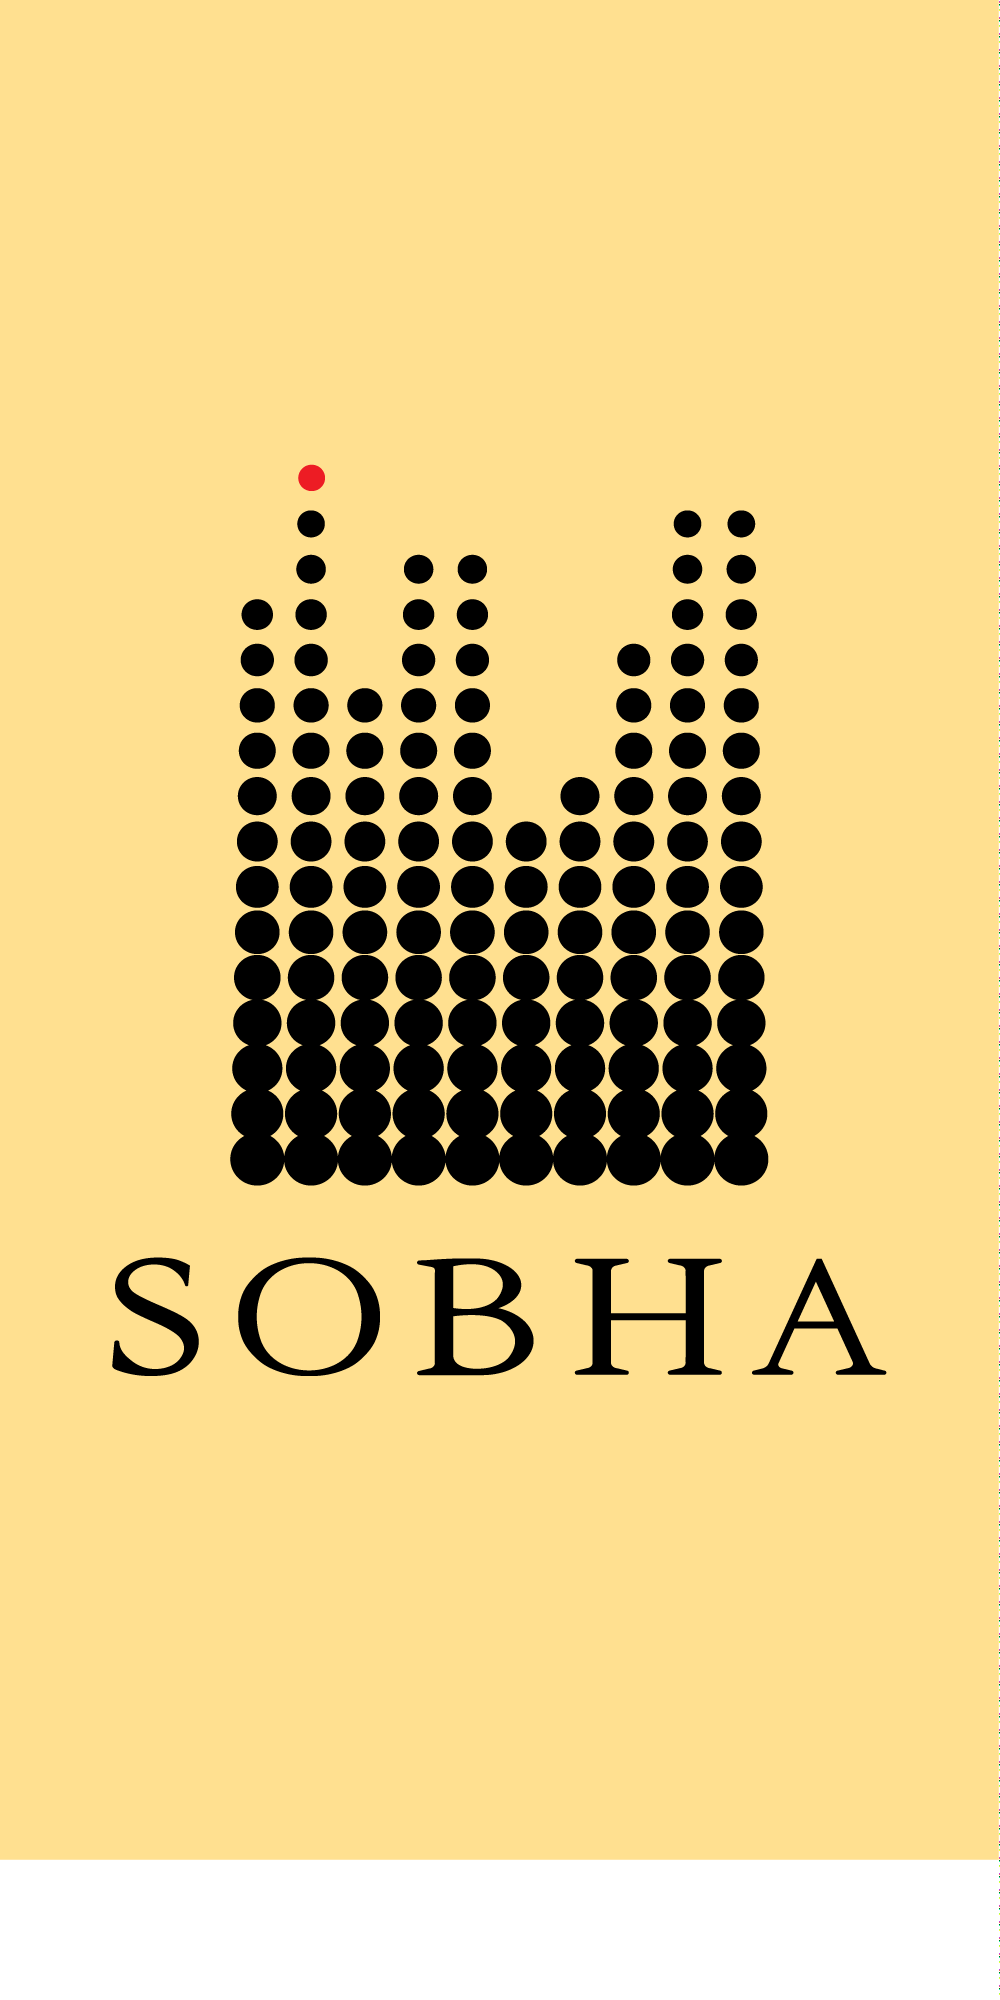 Sobha Logo. Sobha Ltd, Bangalore real estate, India real estate news, Indian property market, Track2Realty